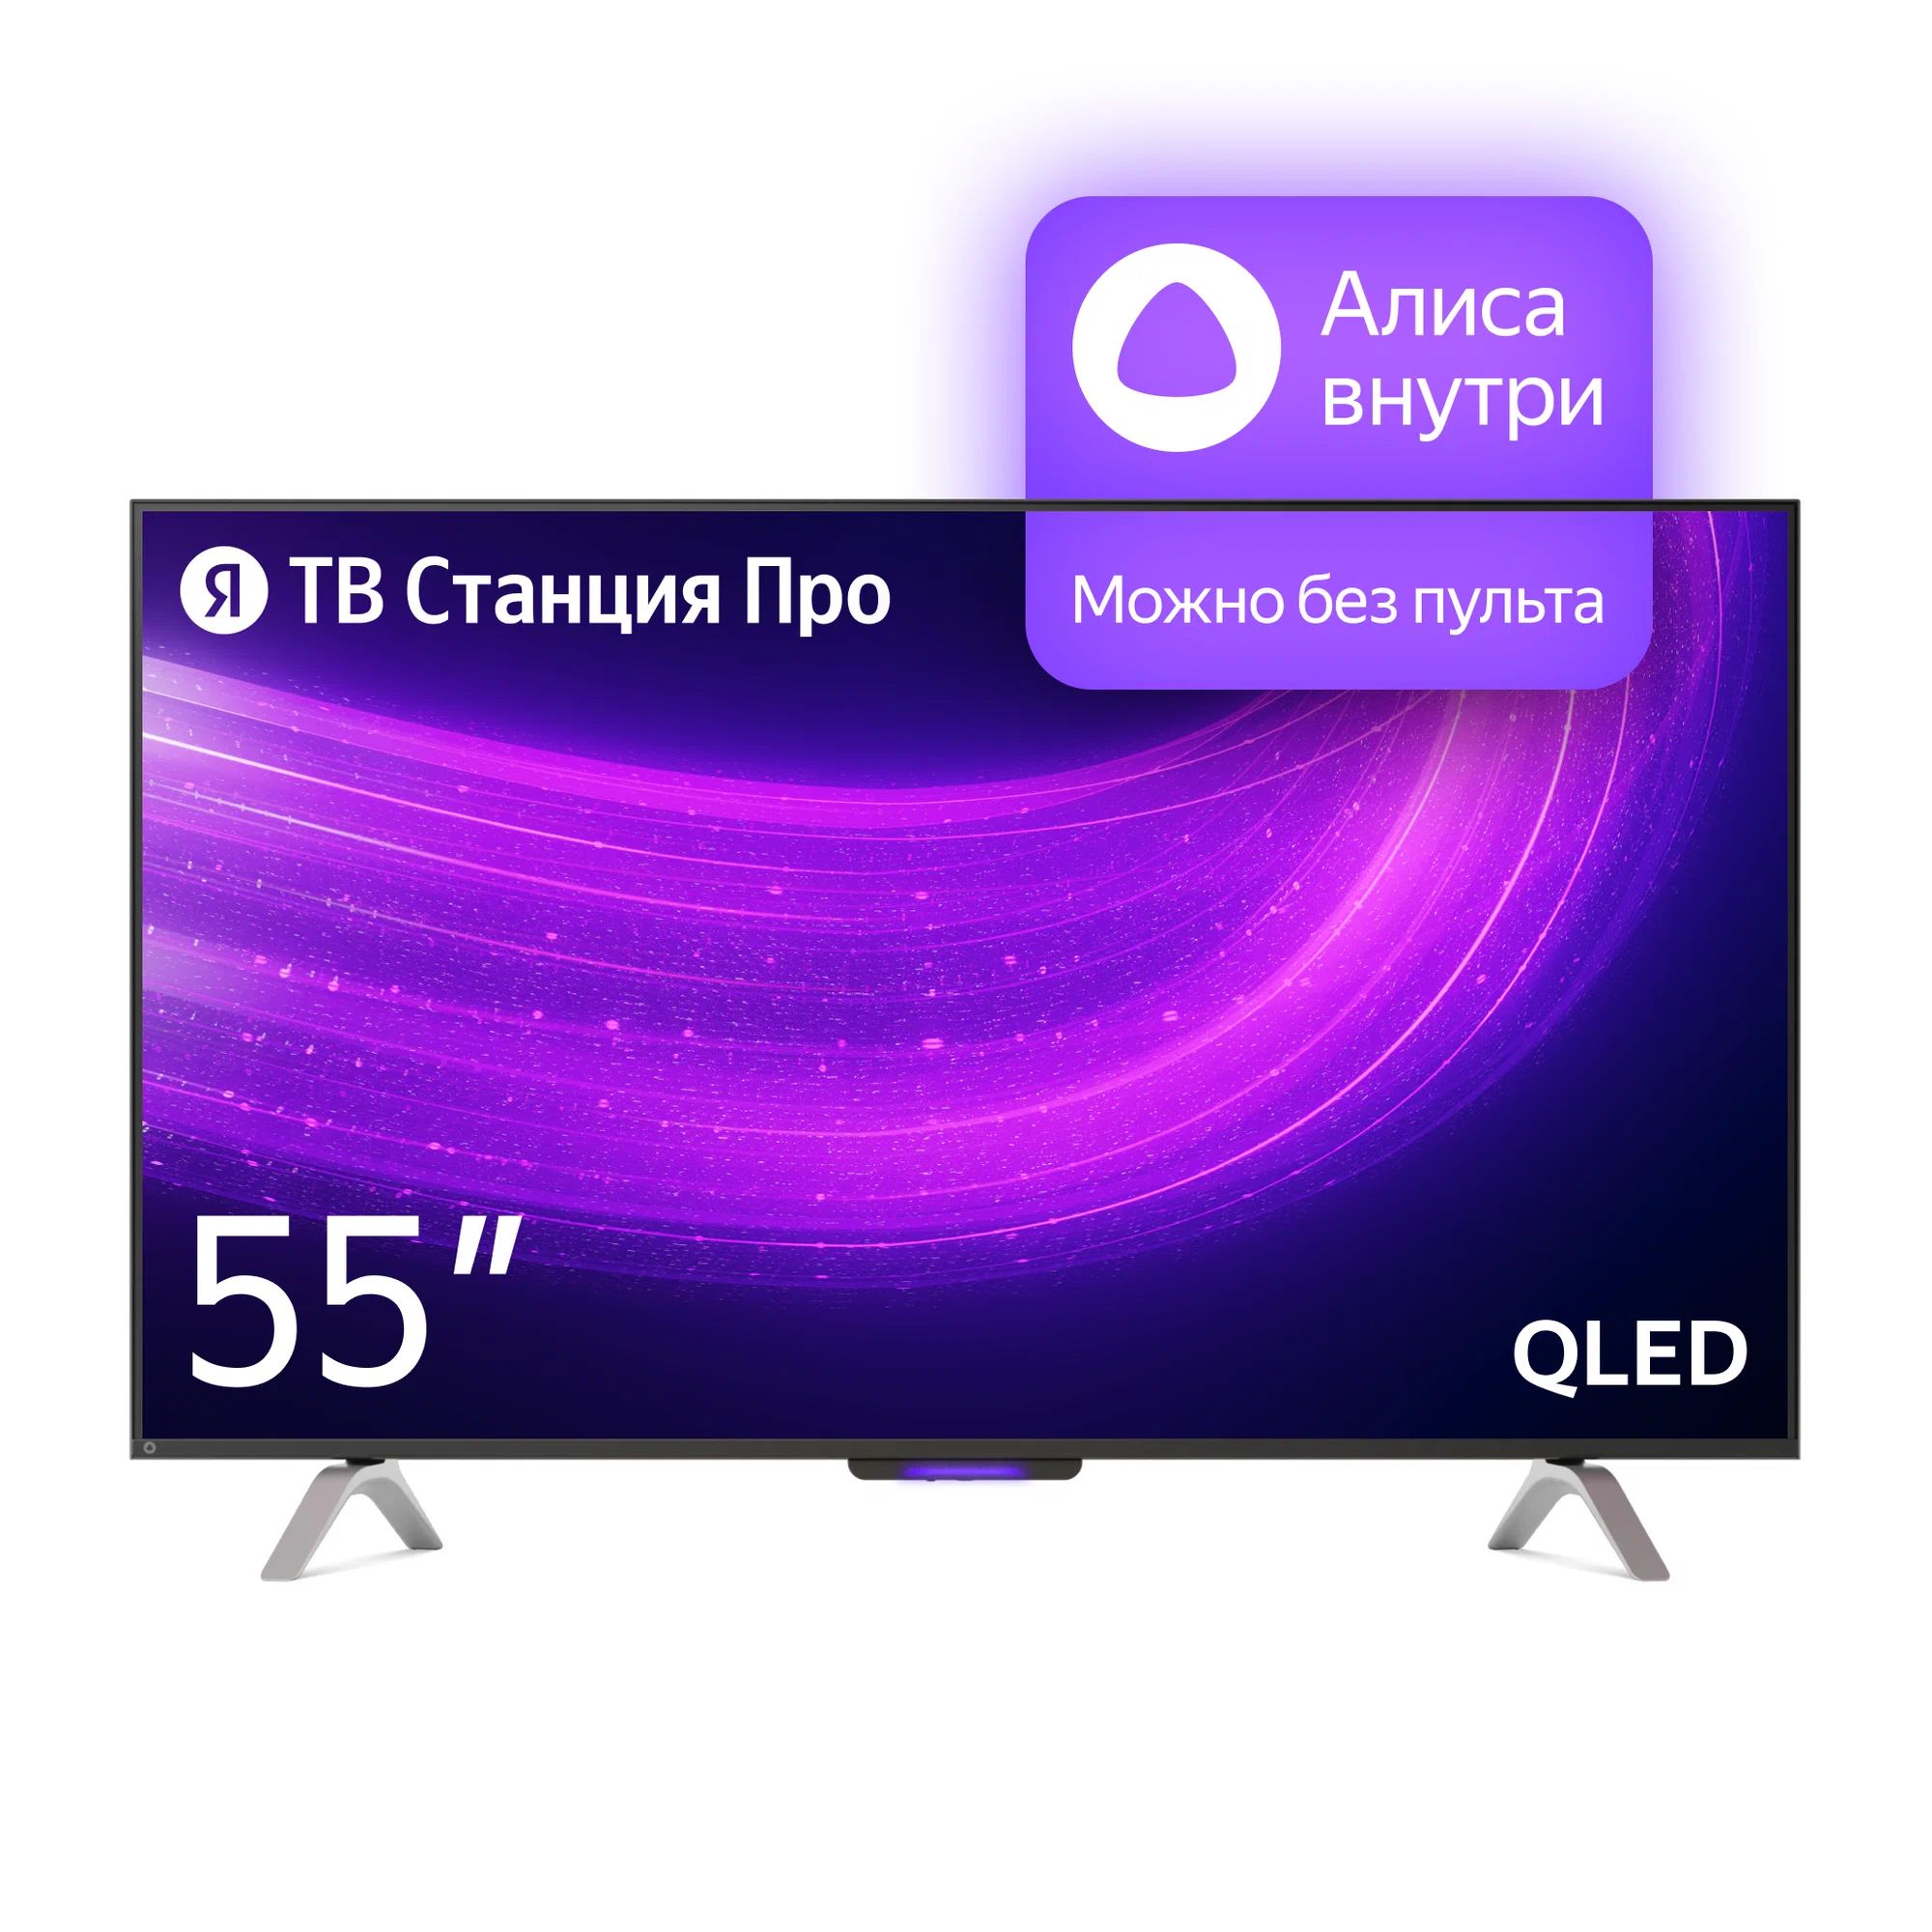 Телевизор Яндекс YNDX-00101 PRO Тв станция с Алисой 55 телевизор яндекс 55 yndx 00073 черный